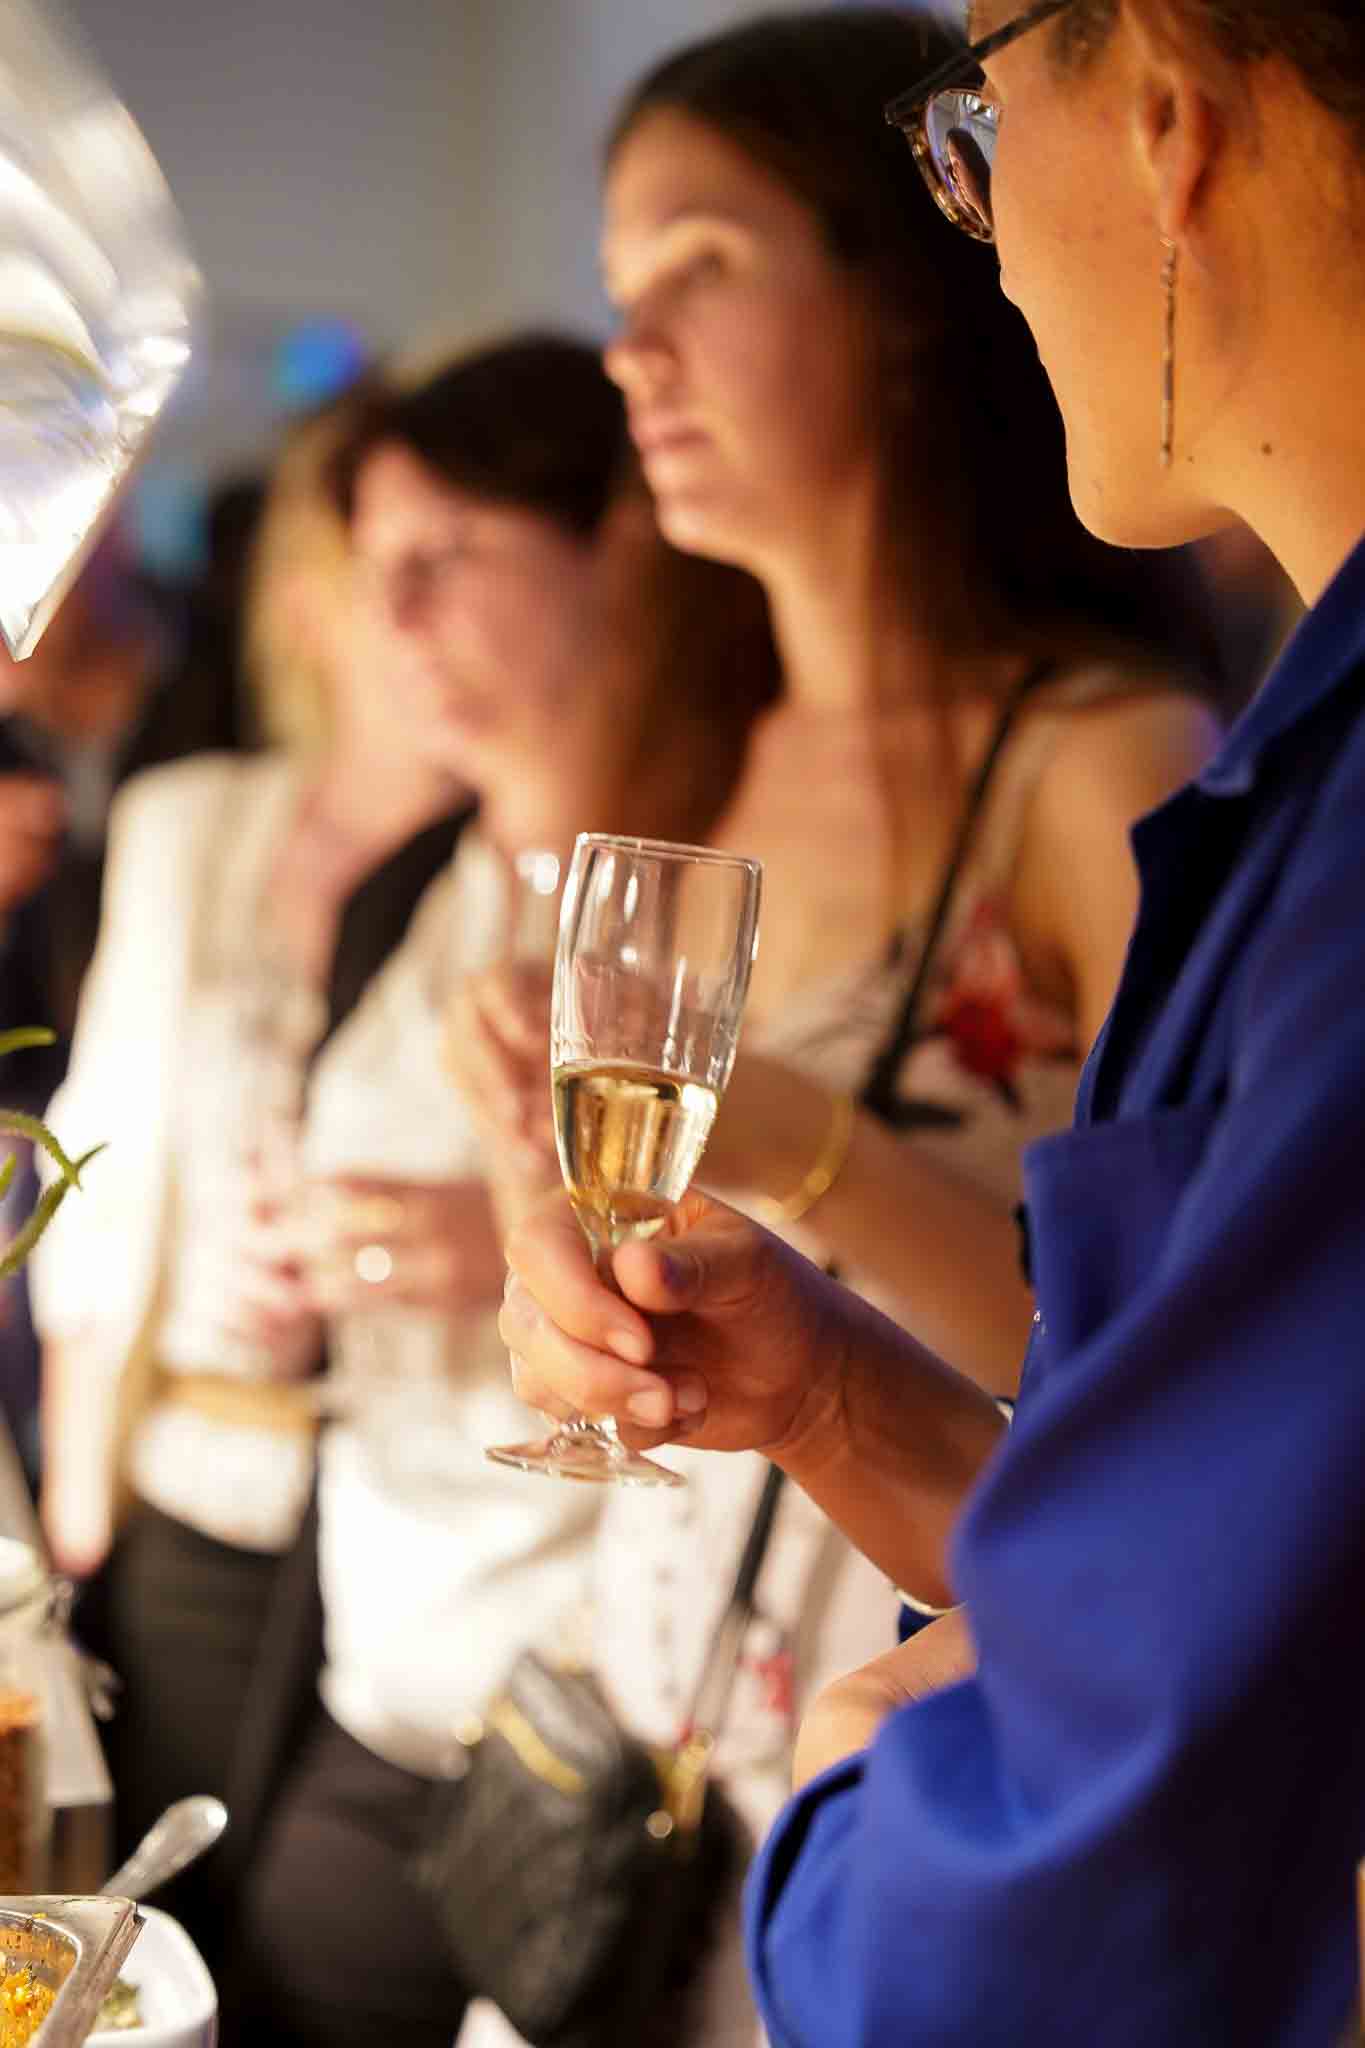 Klanten staan te praten met een glas champagne in hun handen.